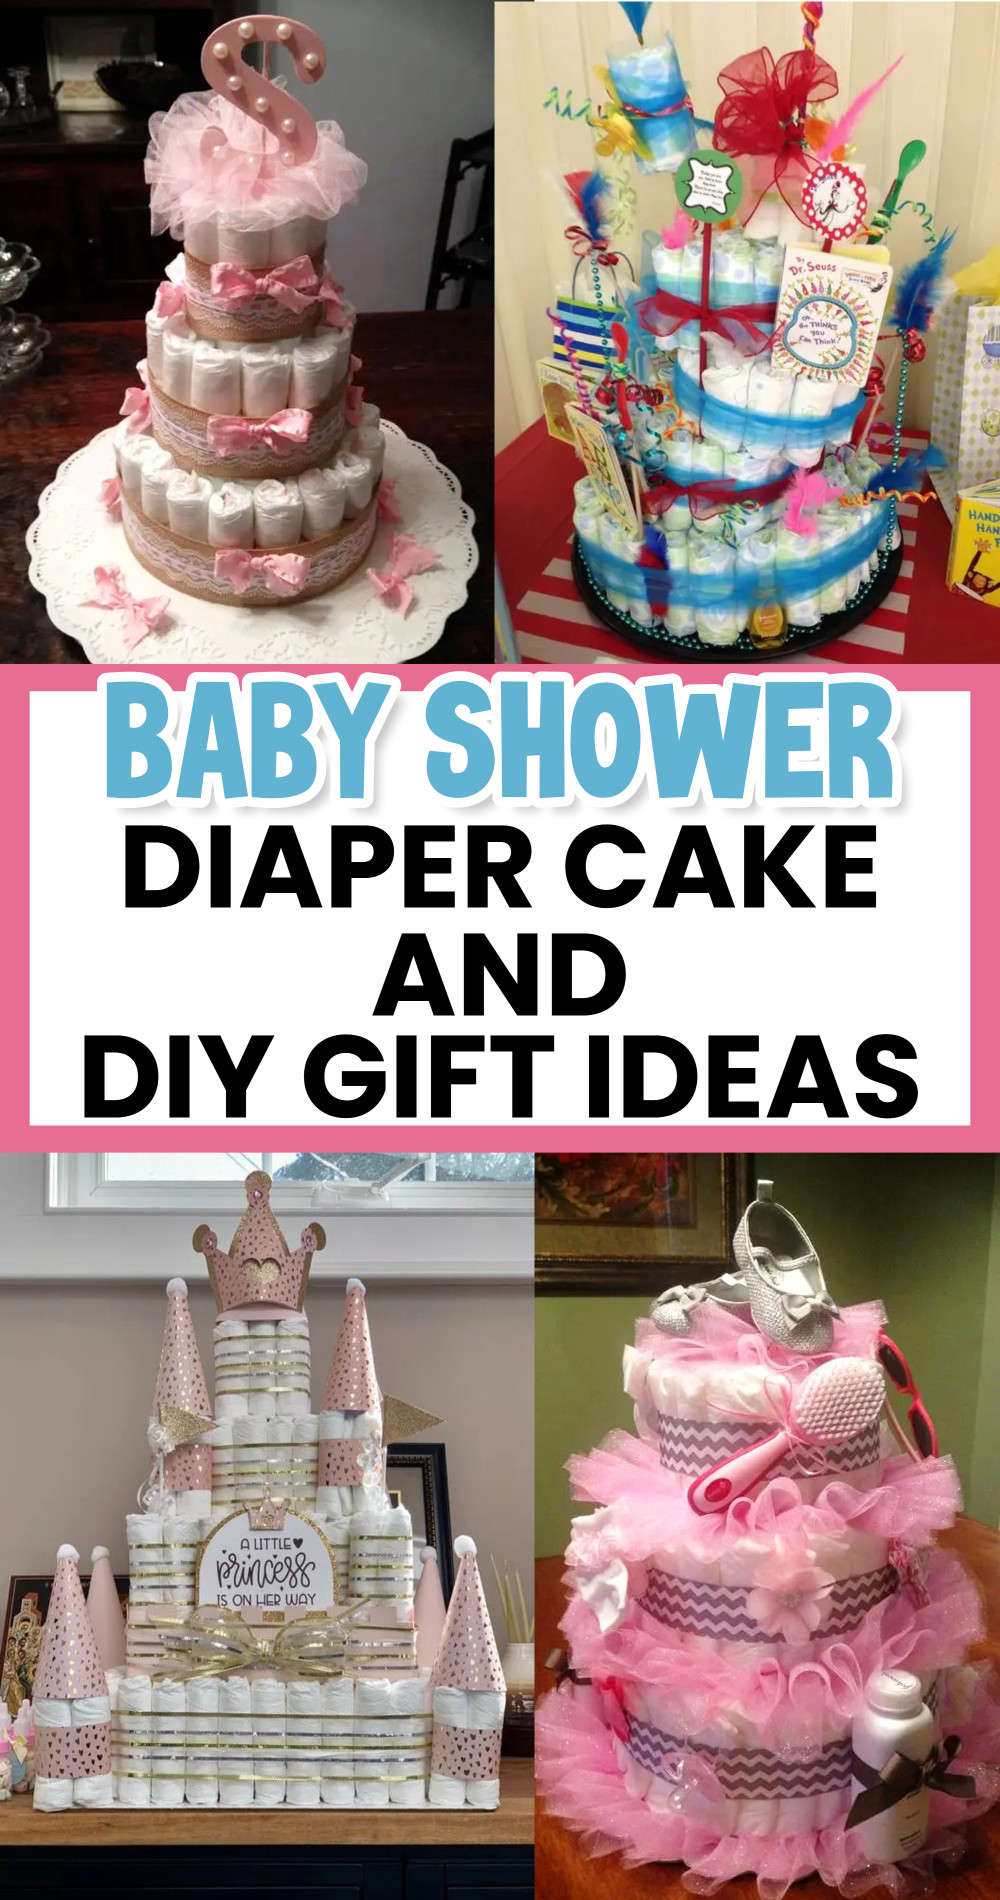 4 diaper cake ideas